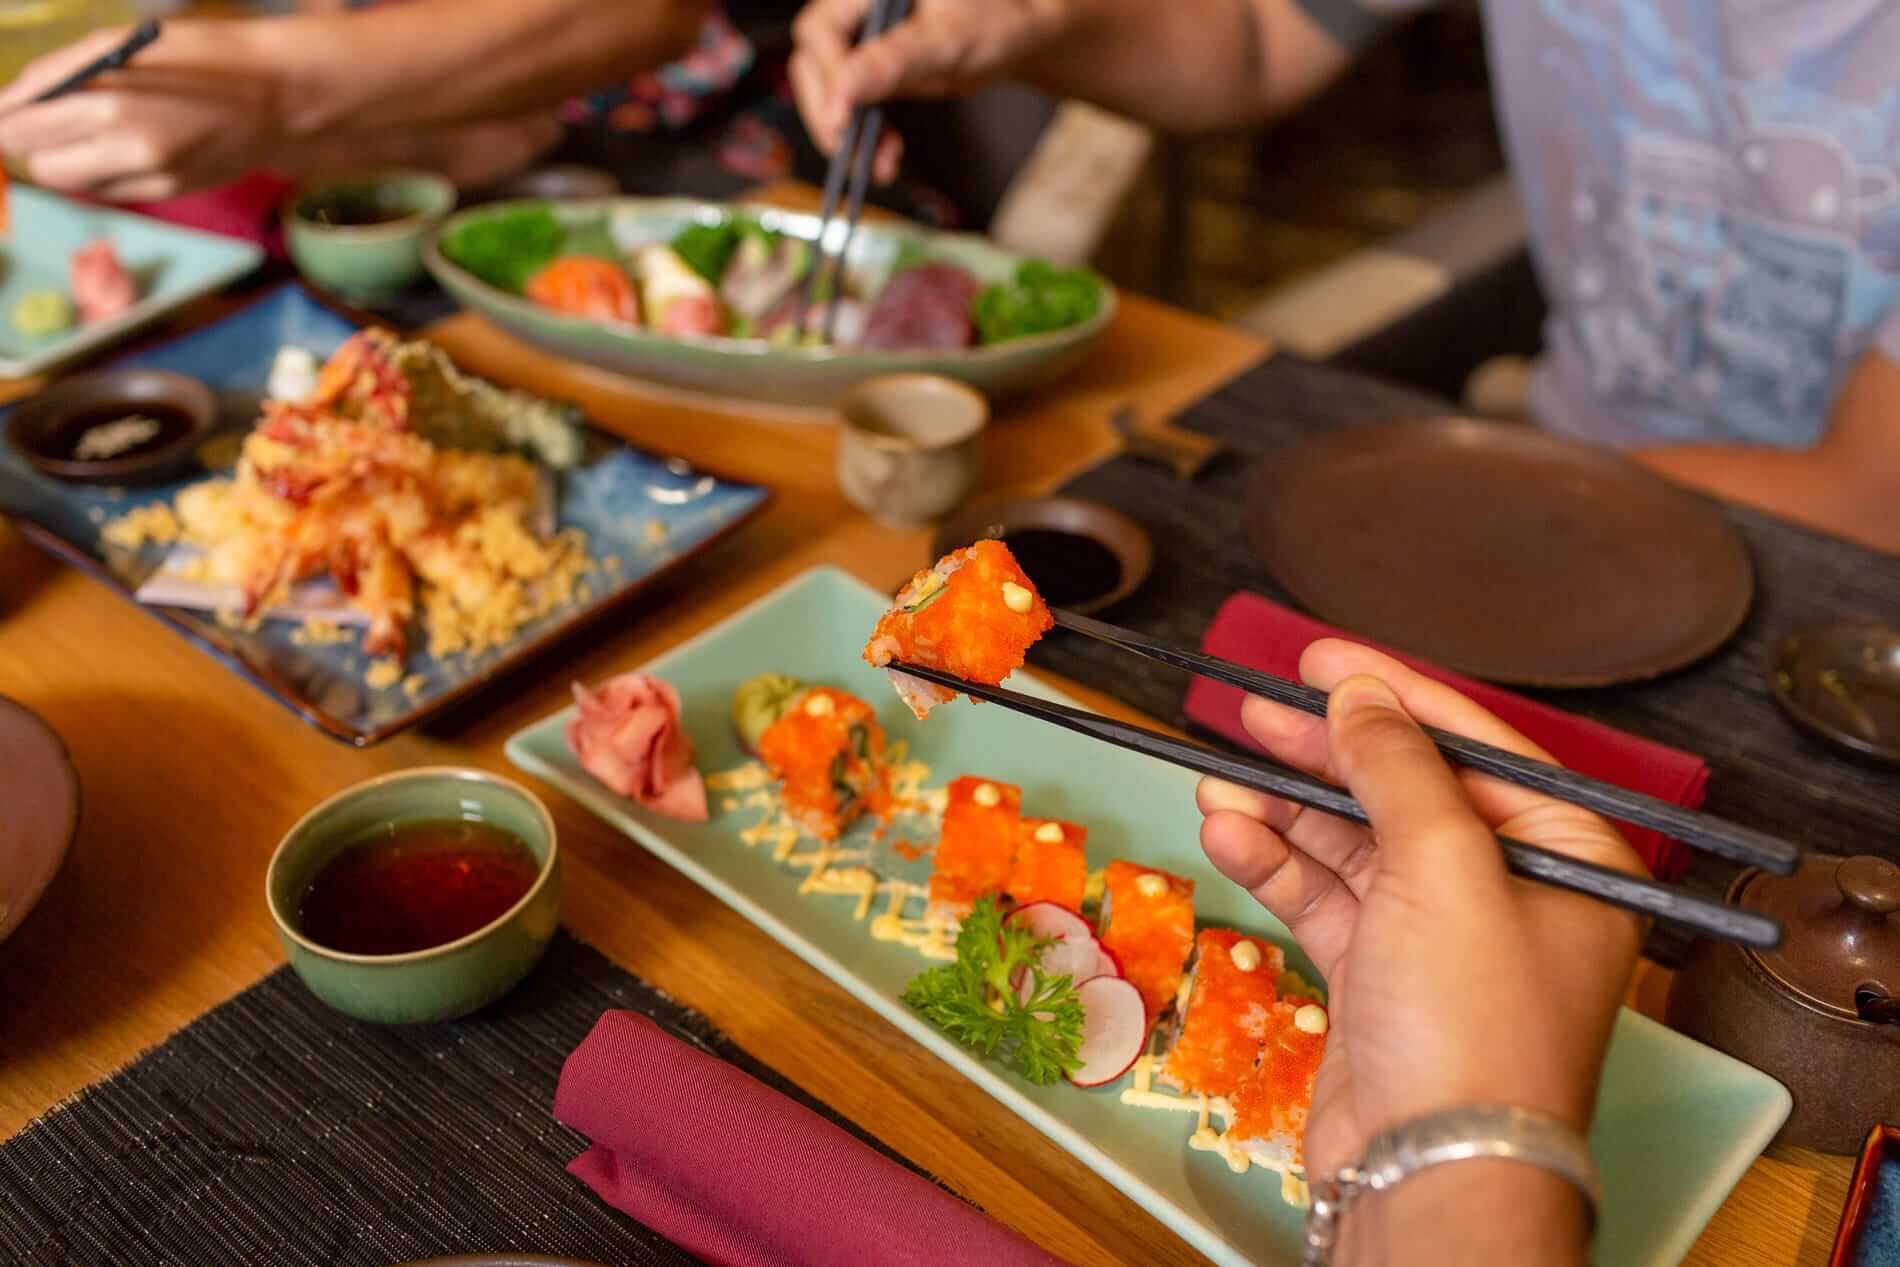 Trên mỗi đĩa đồ ăn của người Nhật, lượng thức ăn thường rất ít nên bạn sẽ không thể ăn quá nhiều. (Ảnh: Internet)